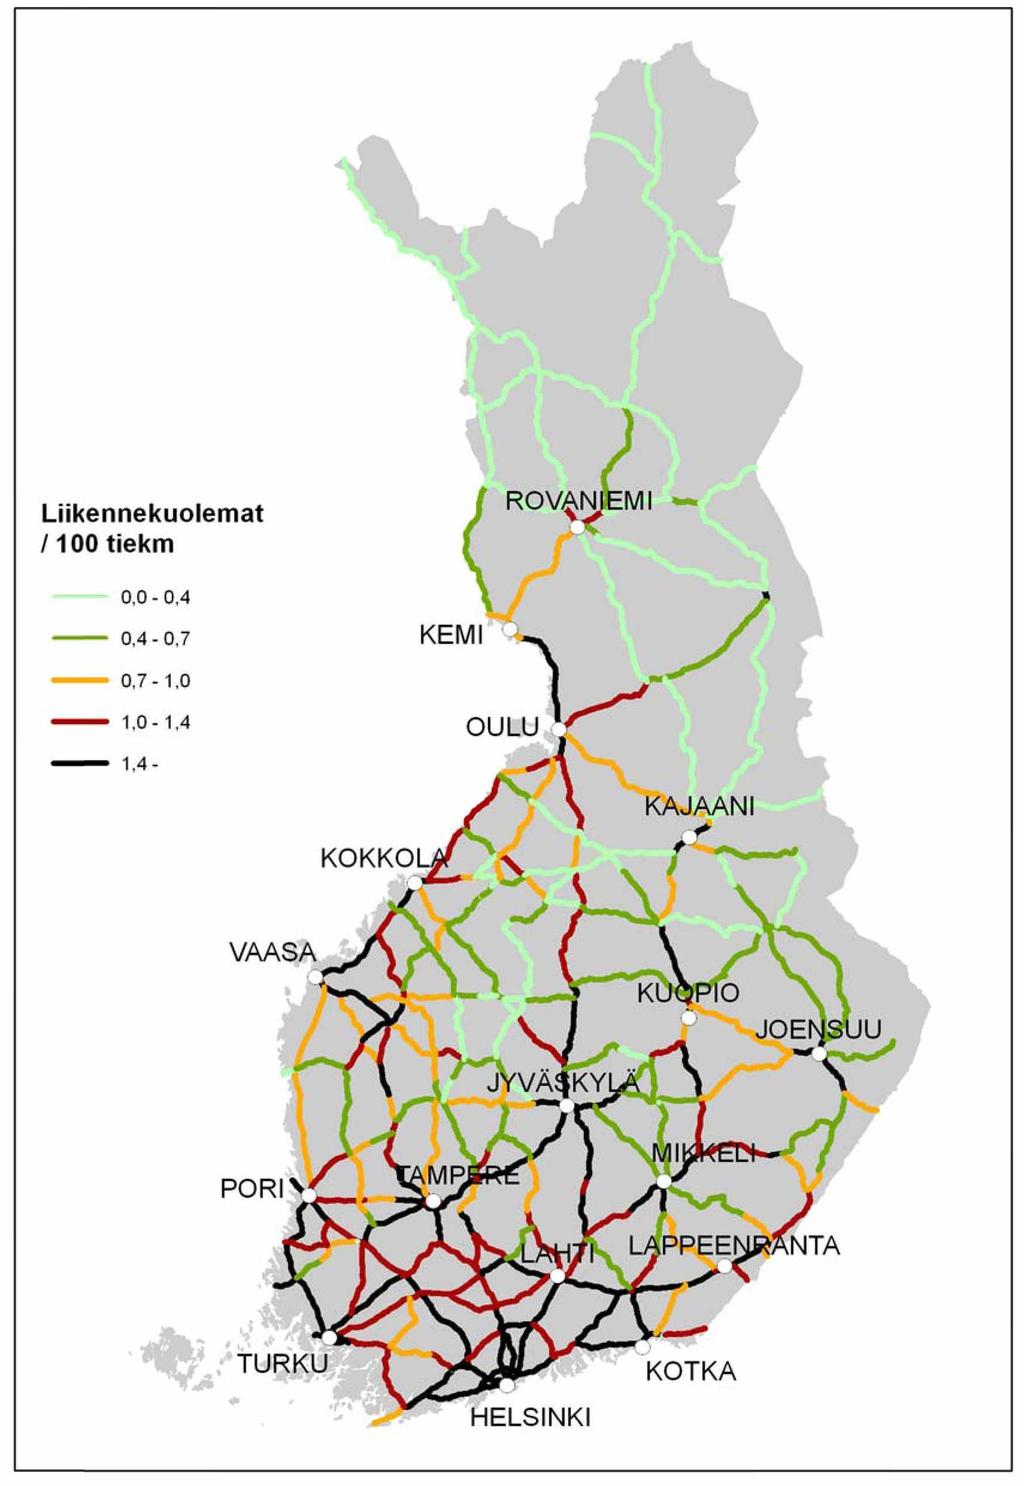 67 Kartta 3. Liikennekuolemien tiheys päätieverkolla, keskiarvo vuosista 2006-2010.